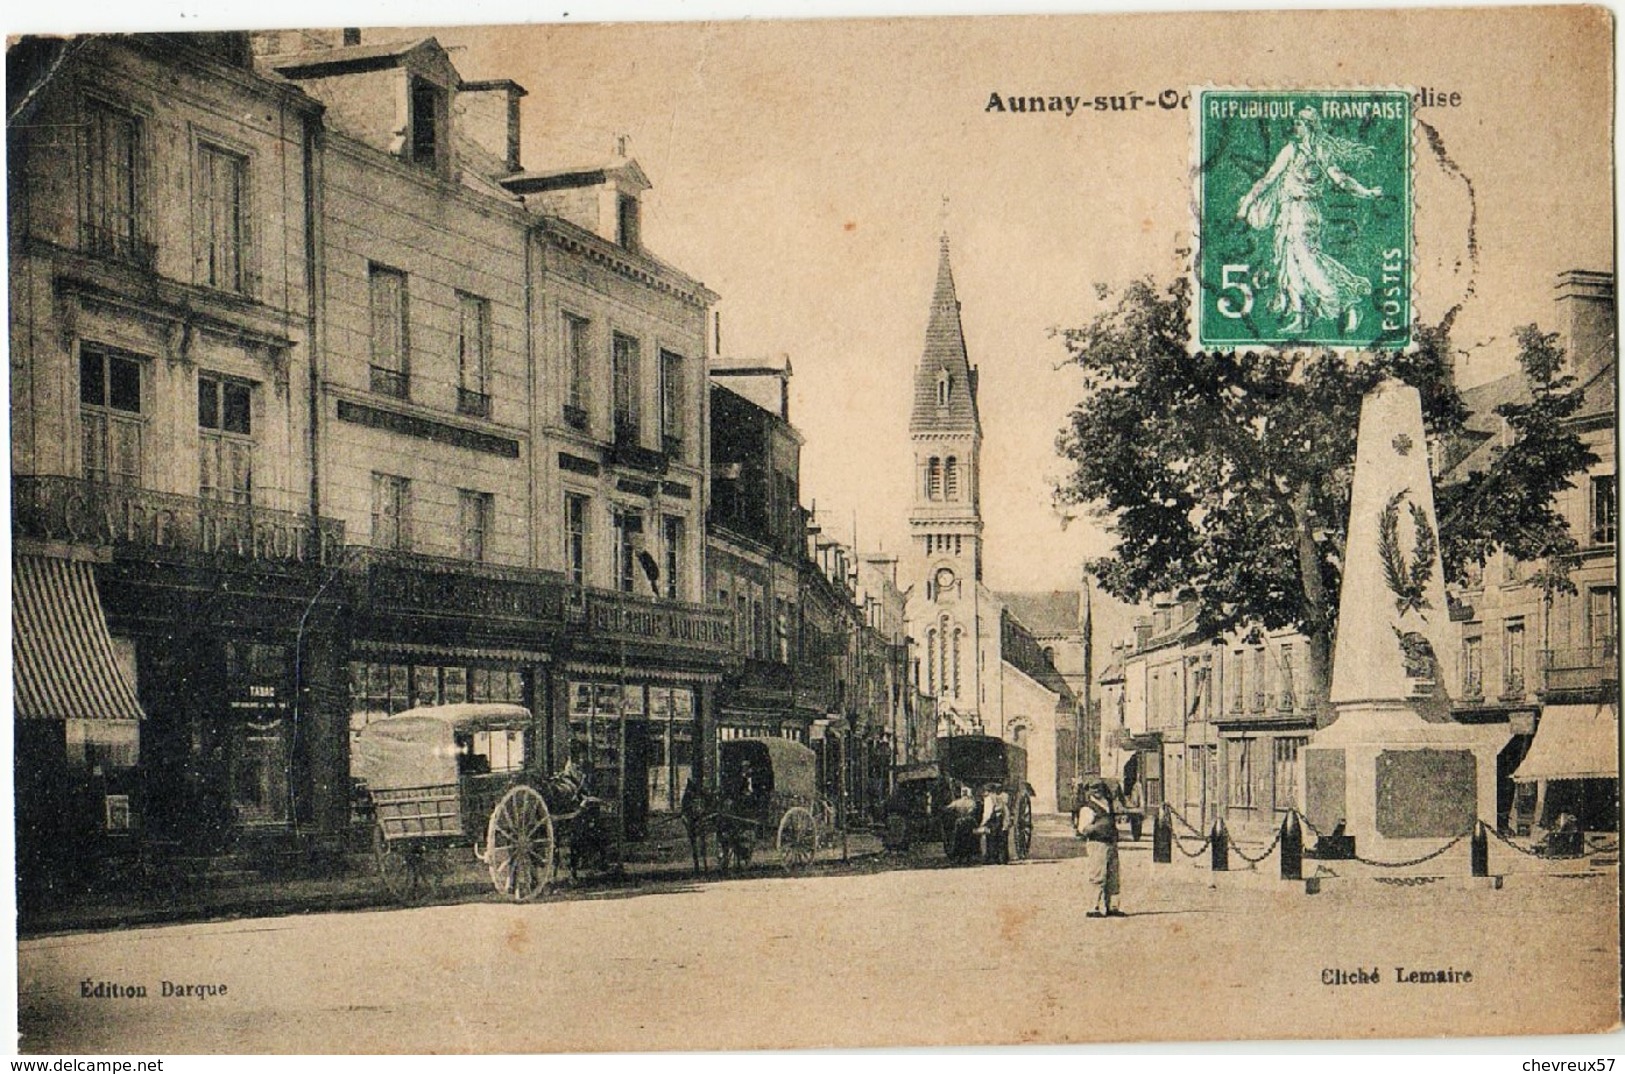 LOT 19 - VILLES ET VILLAGES DE FRANCE - 35 cartes anciennes dont villages Normandie